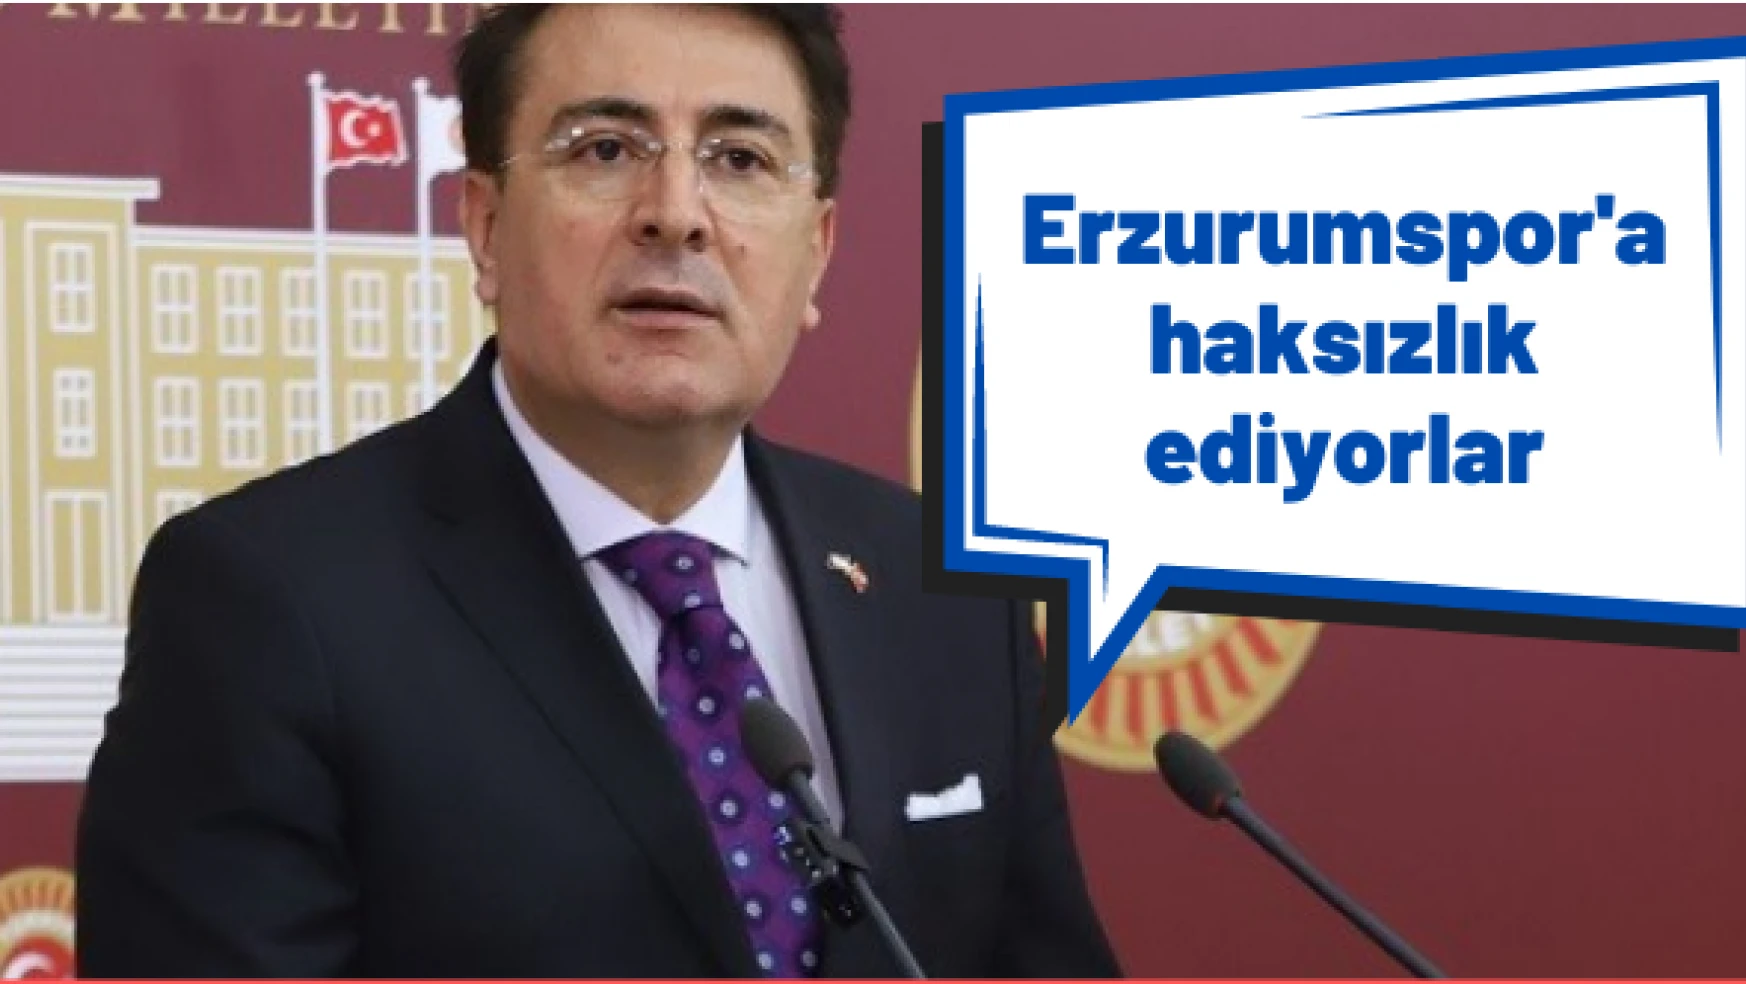 Milletvekili Aydemir: " Erzurumspor'un hakkı yeniyor"